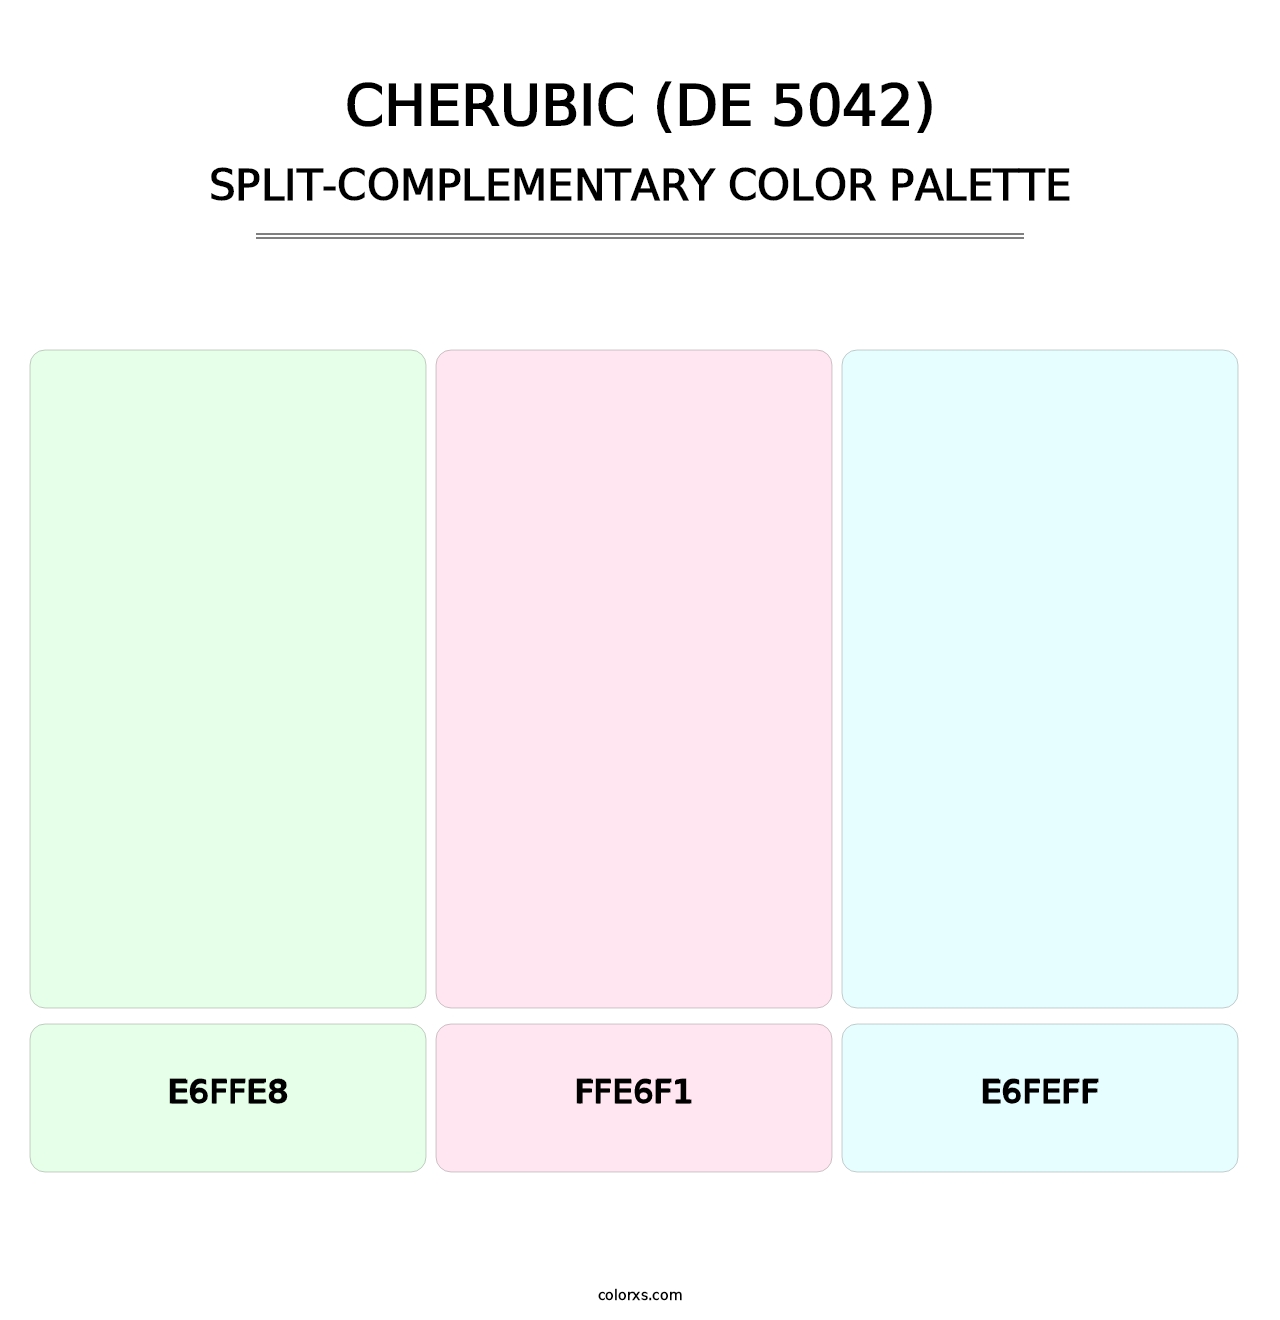 Cherubic (DE 5042) - Split-Complementary Color Palette